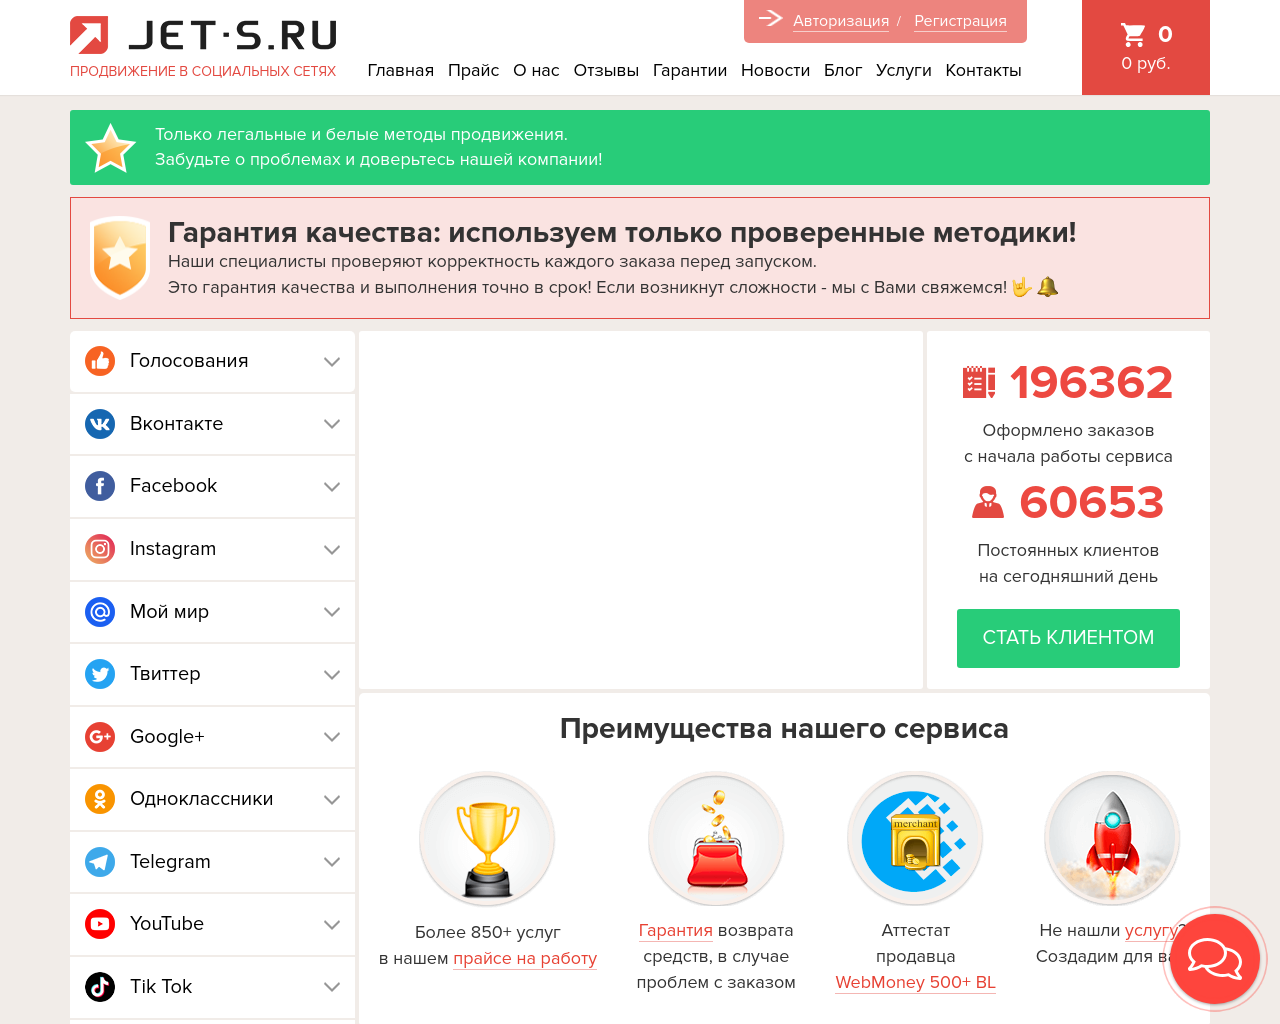 jet-s.ru